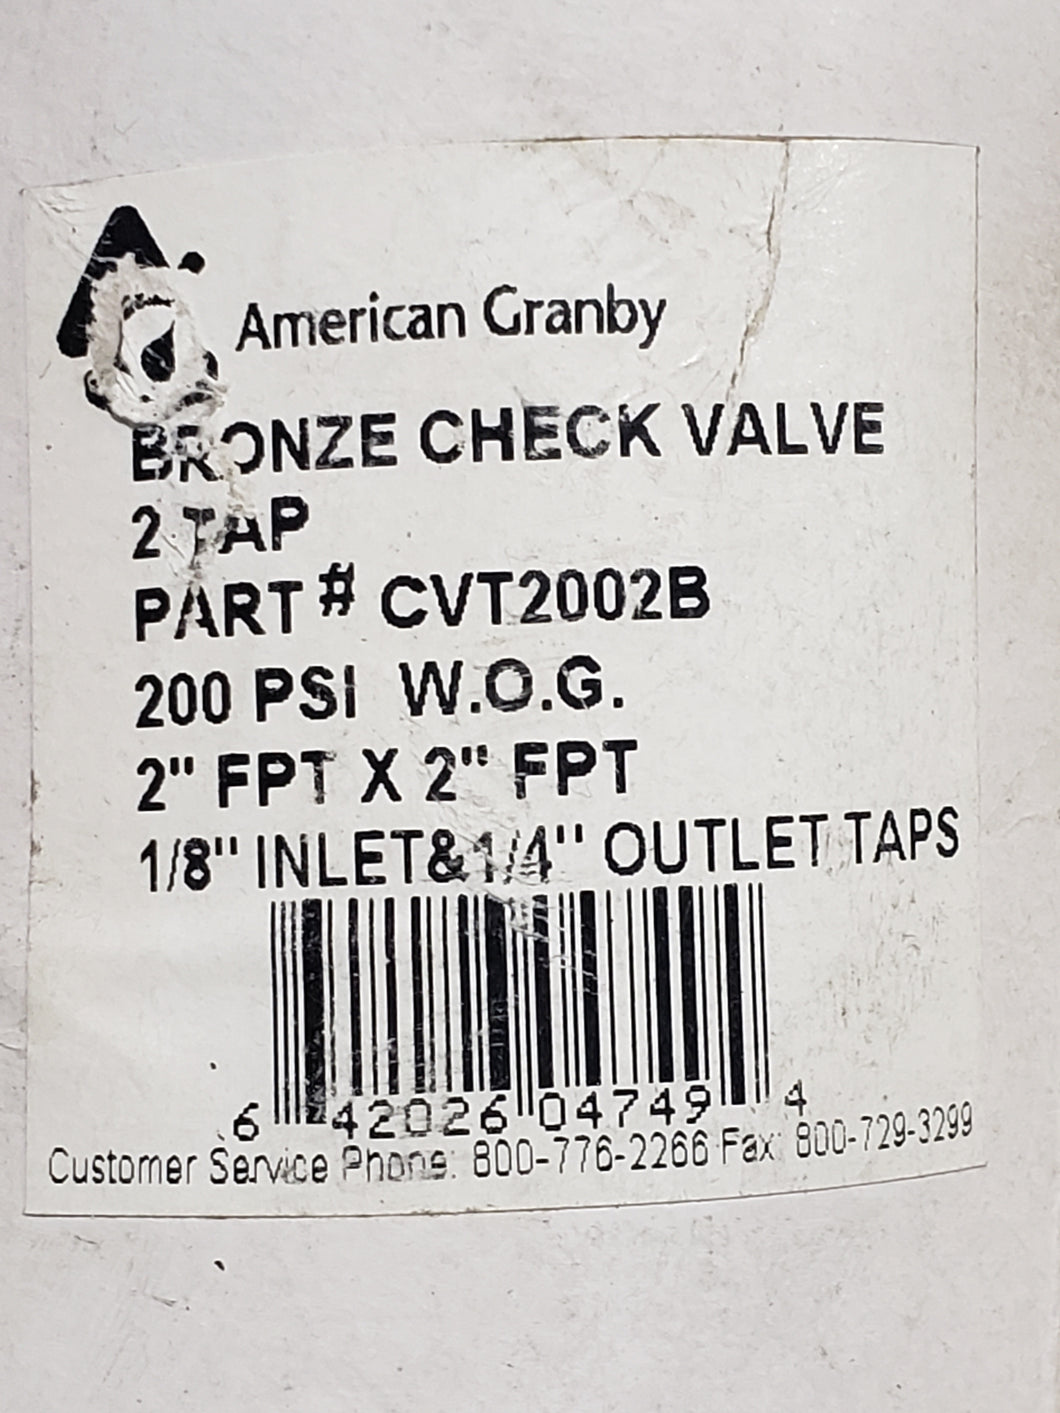 American Granby Bronze Check Valve - 2 Tap - 2